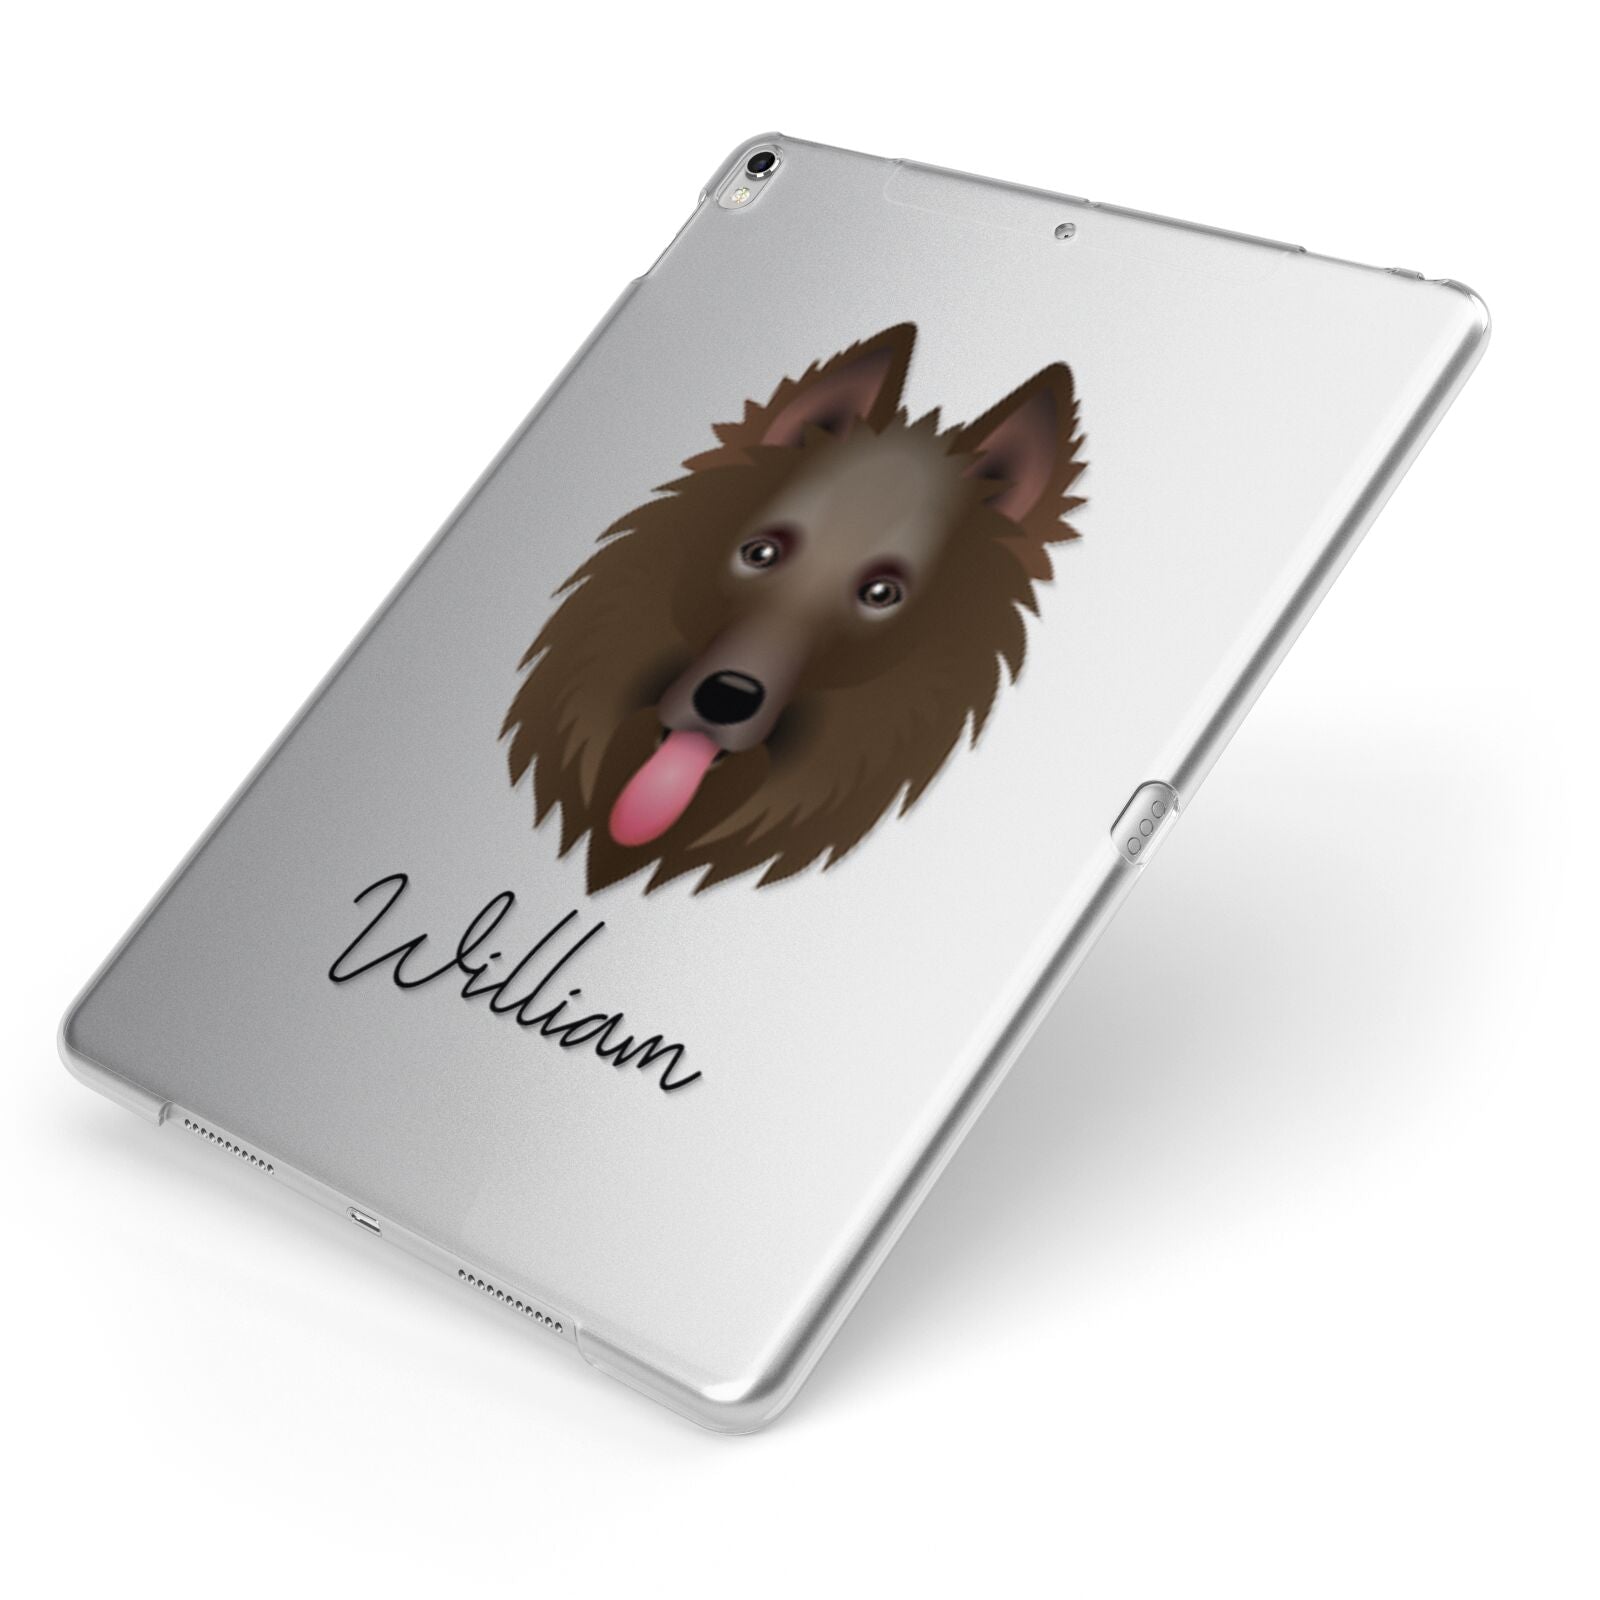 Belgian Shepherd Personalised Apple iPad Case on Silver iPad Side View